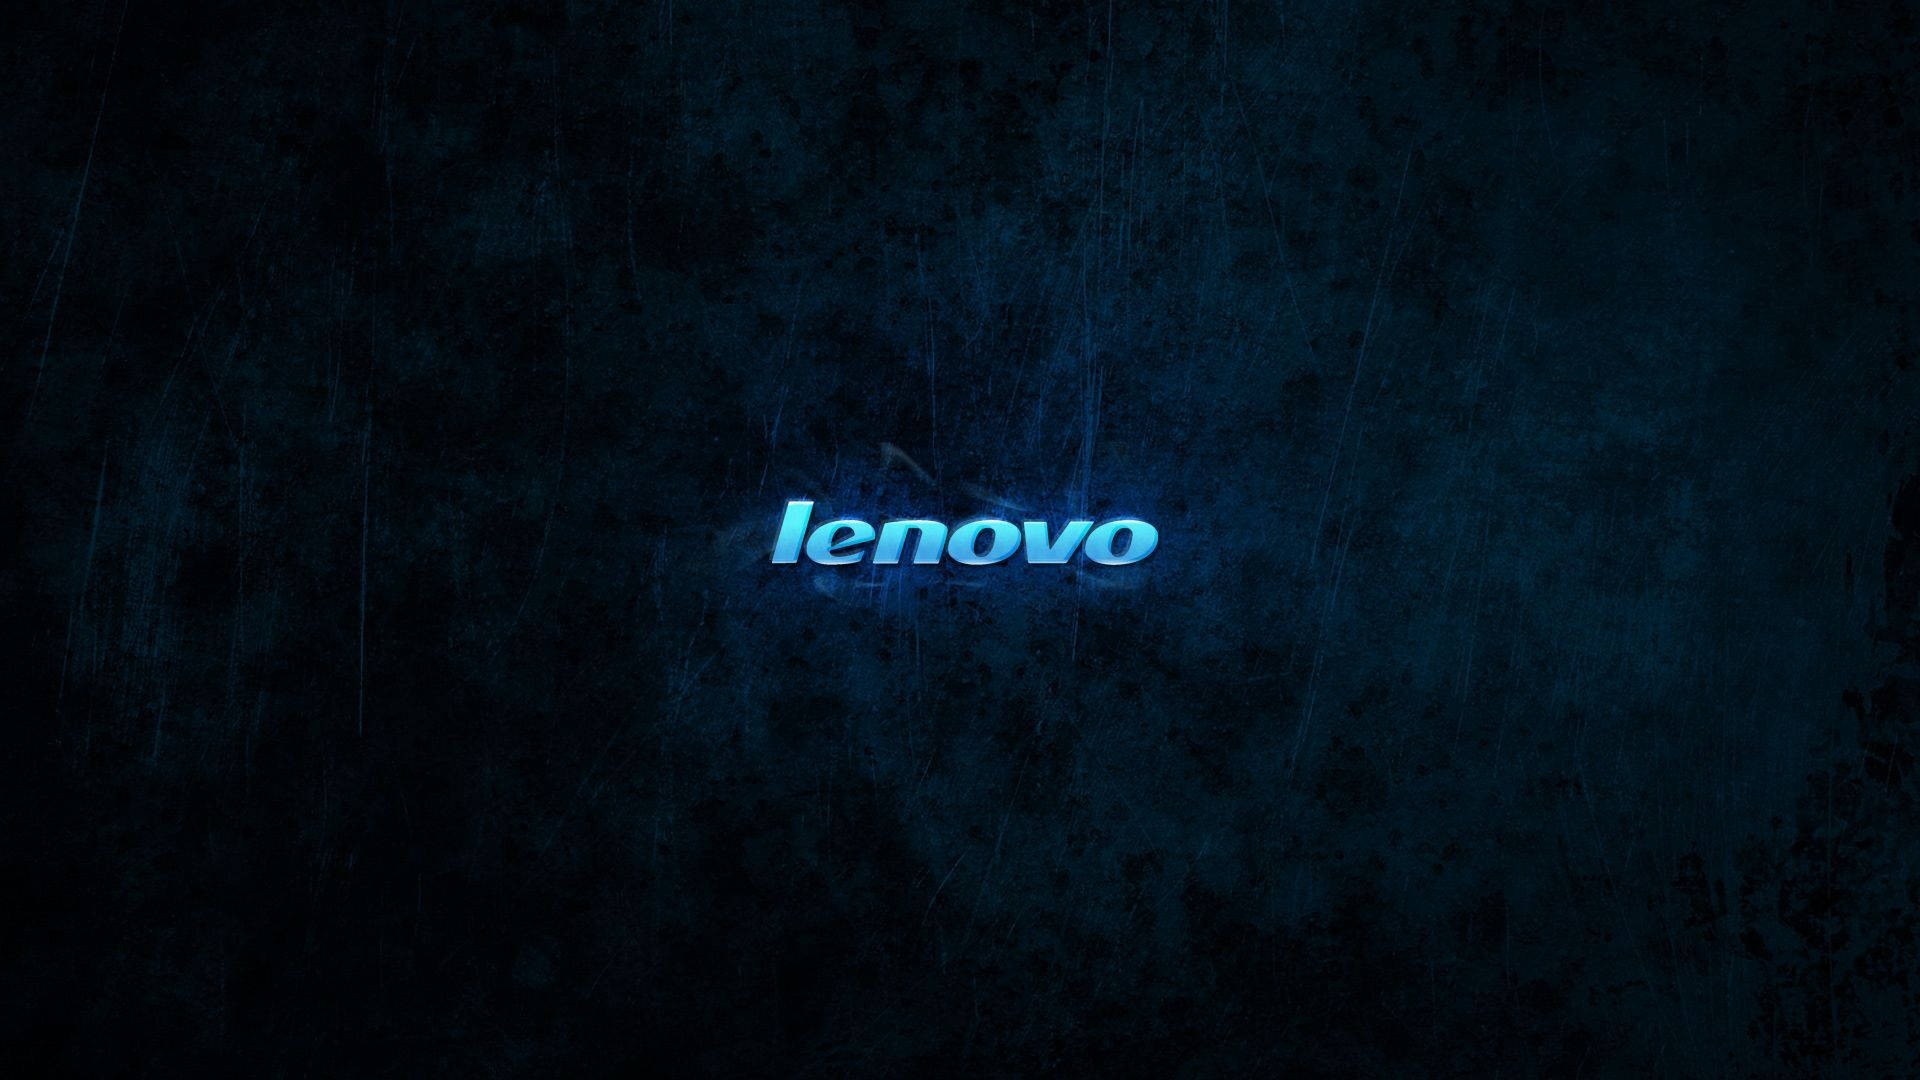 Lenovo Tablet Background Wallpaper